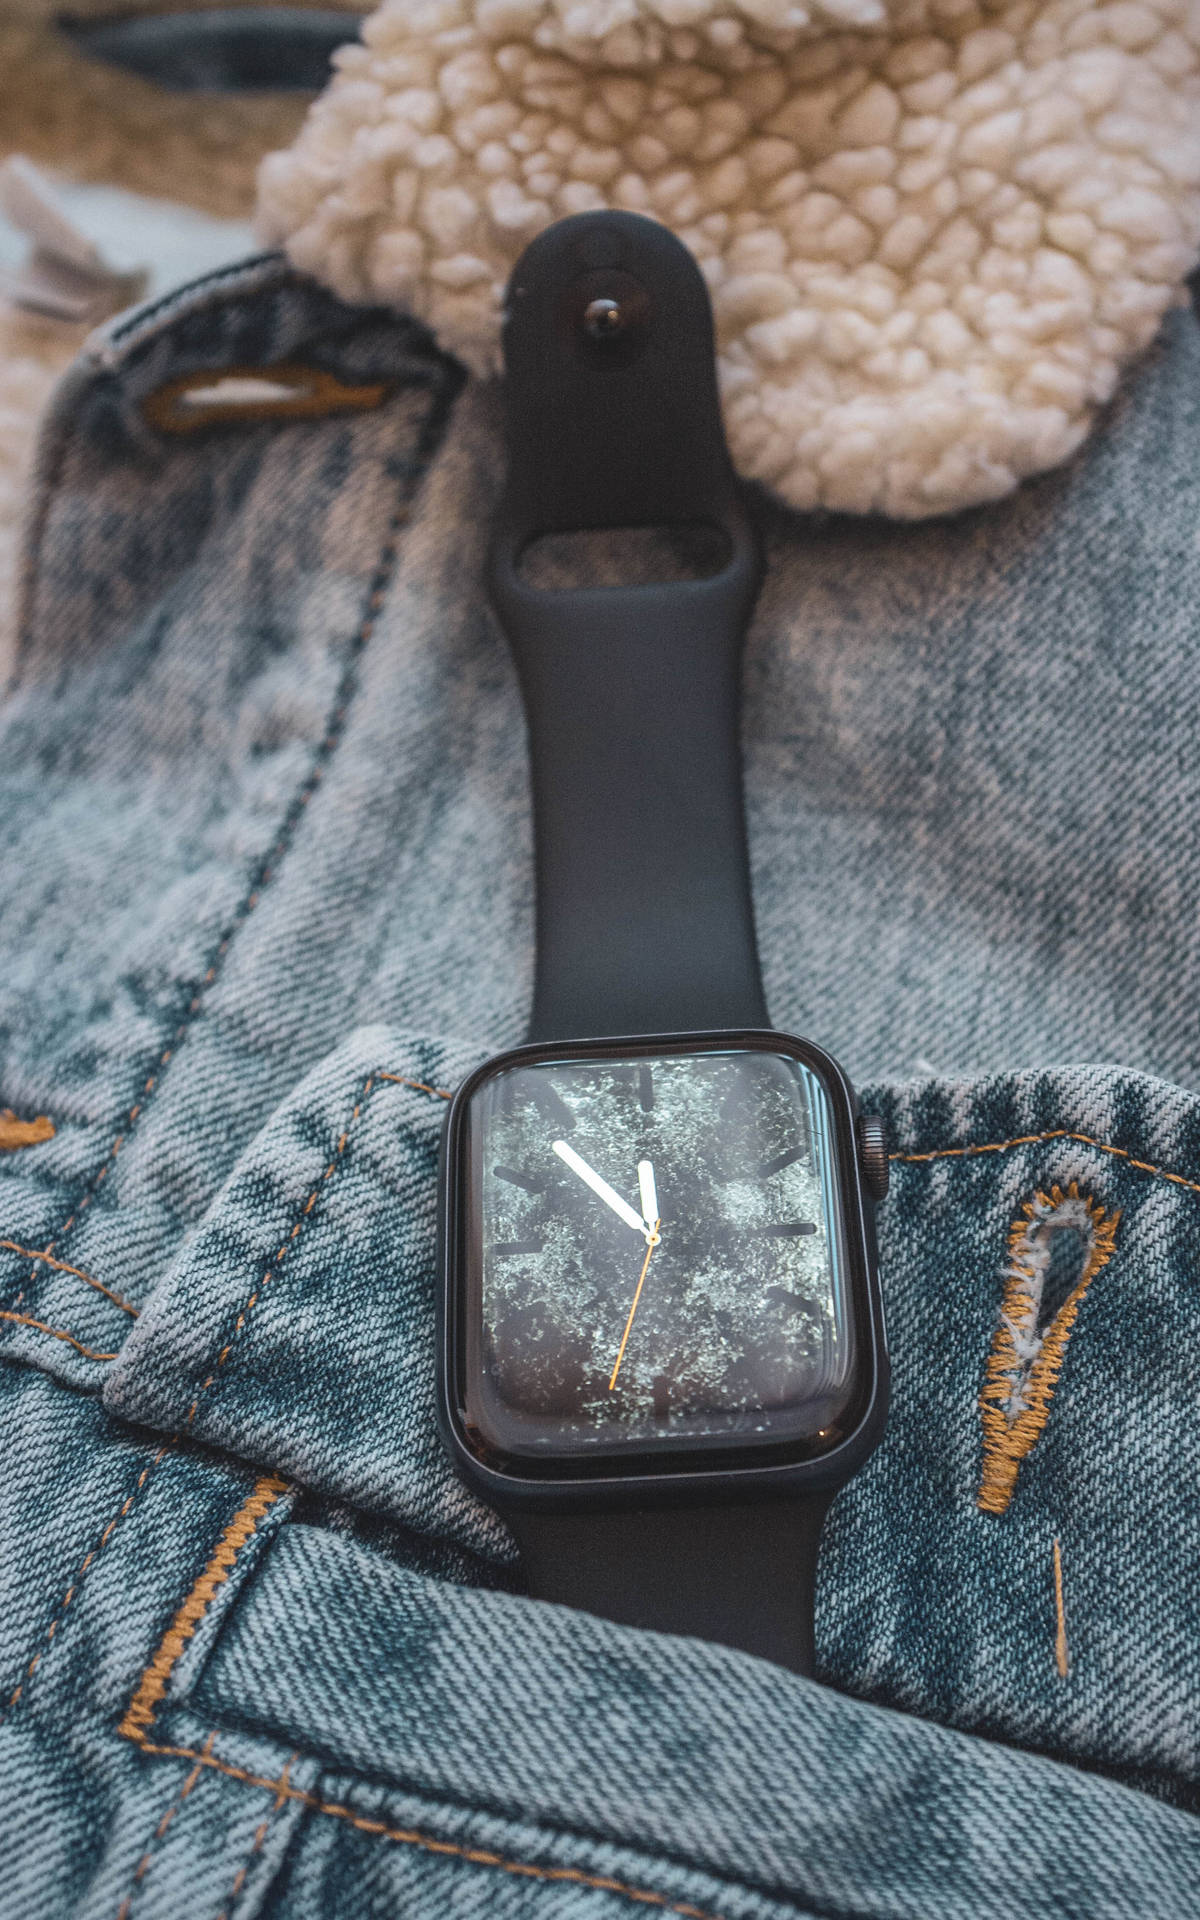 Apple Smartwatch På Denimjakke Wallpaper